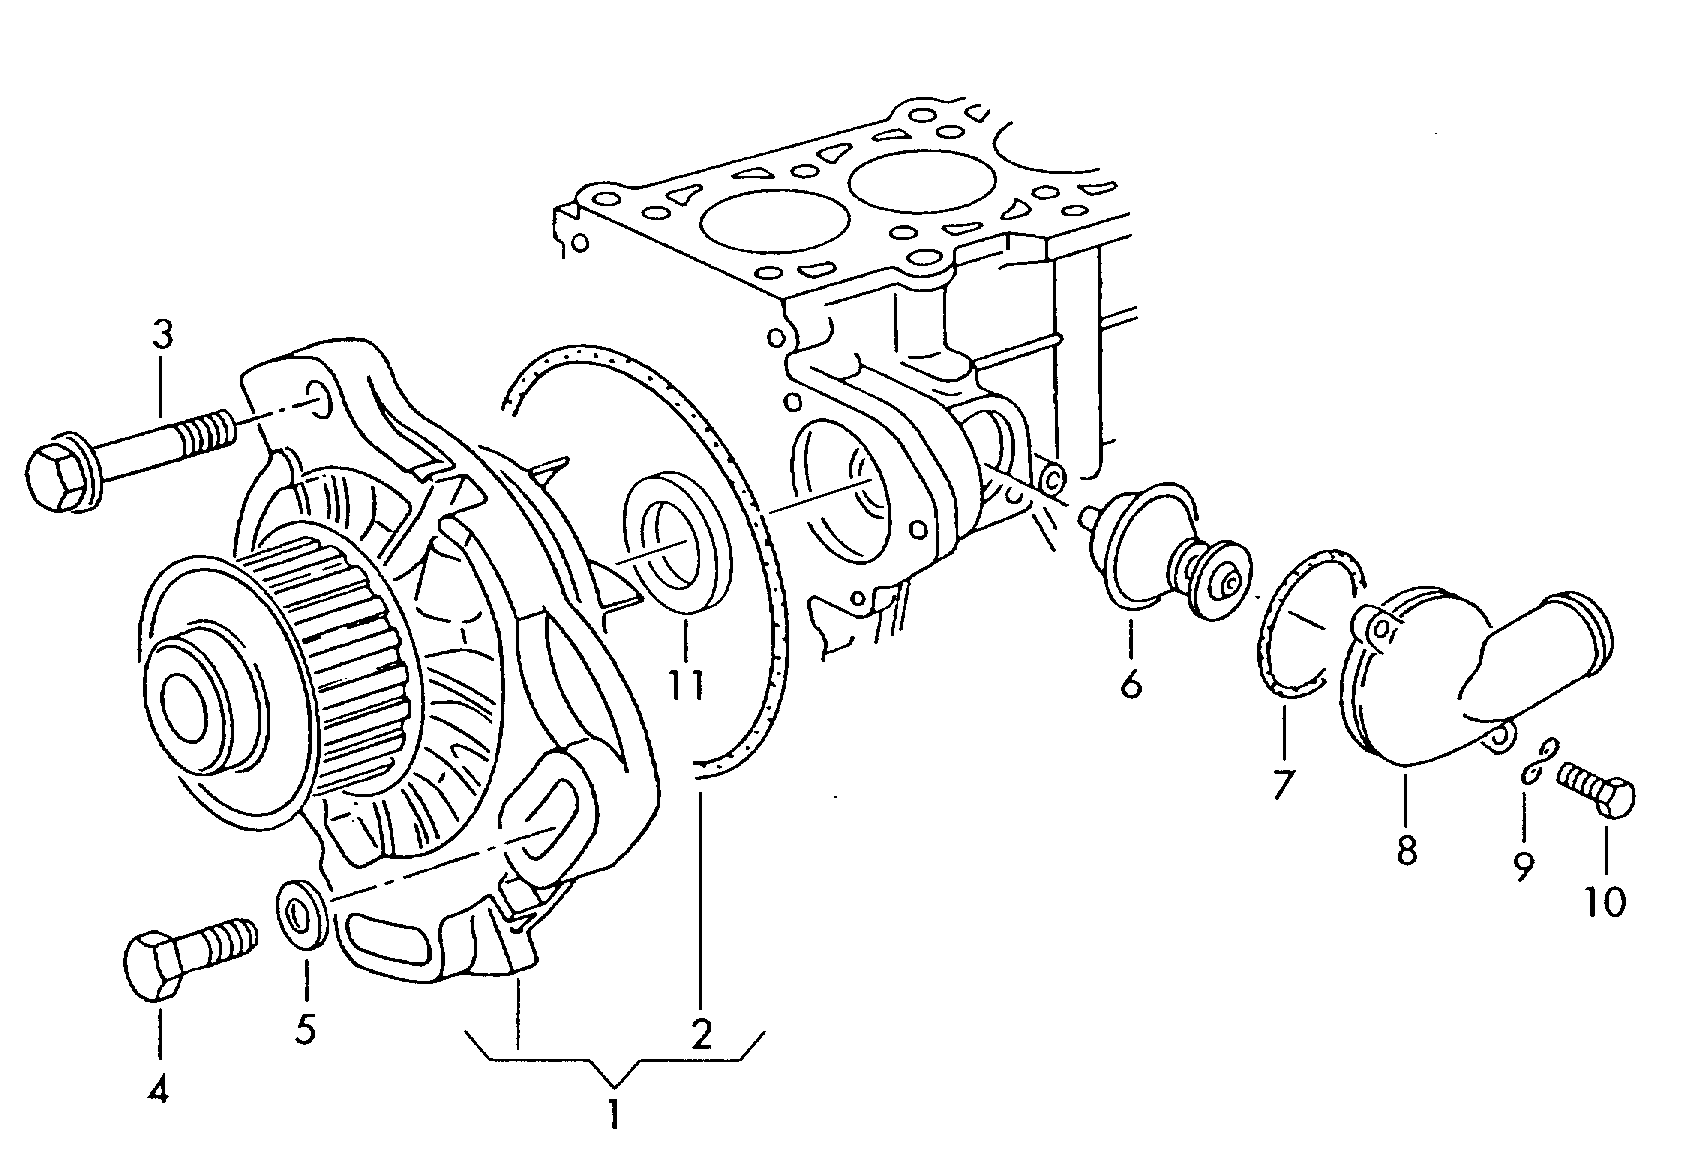 4231 24045 - Diesel-Industrie-Motore - imd